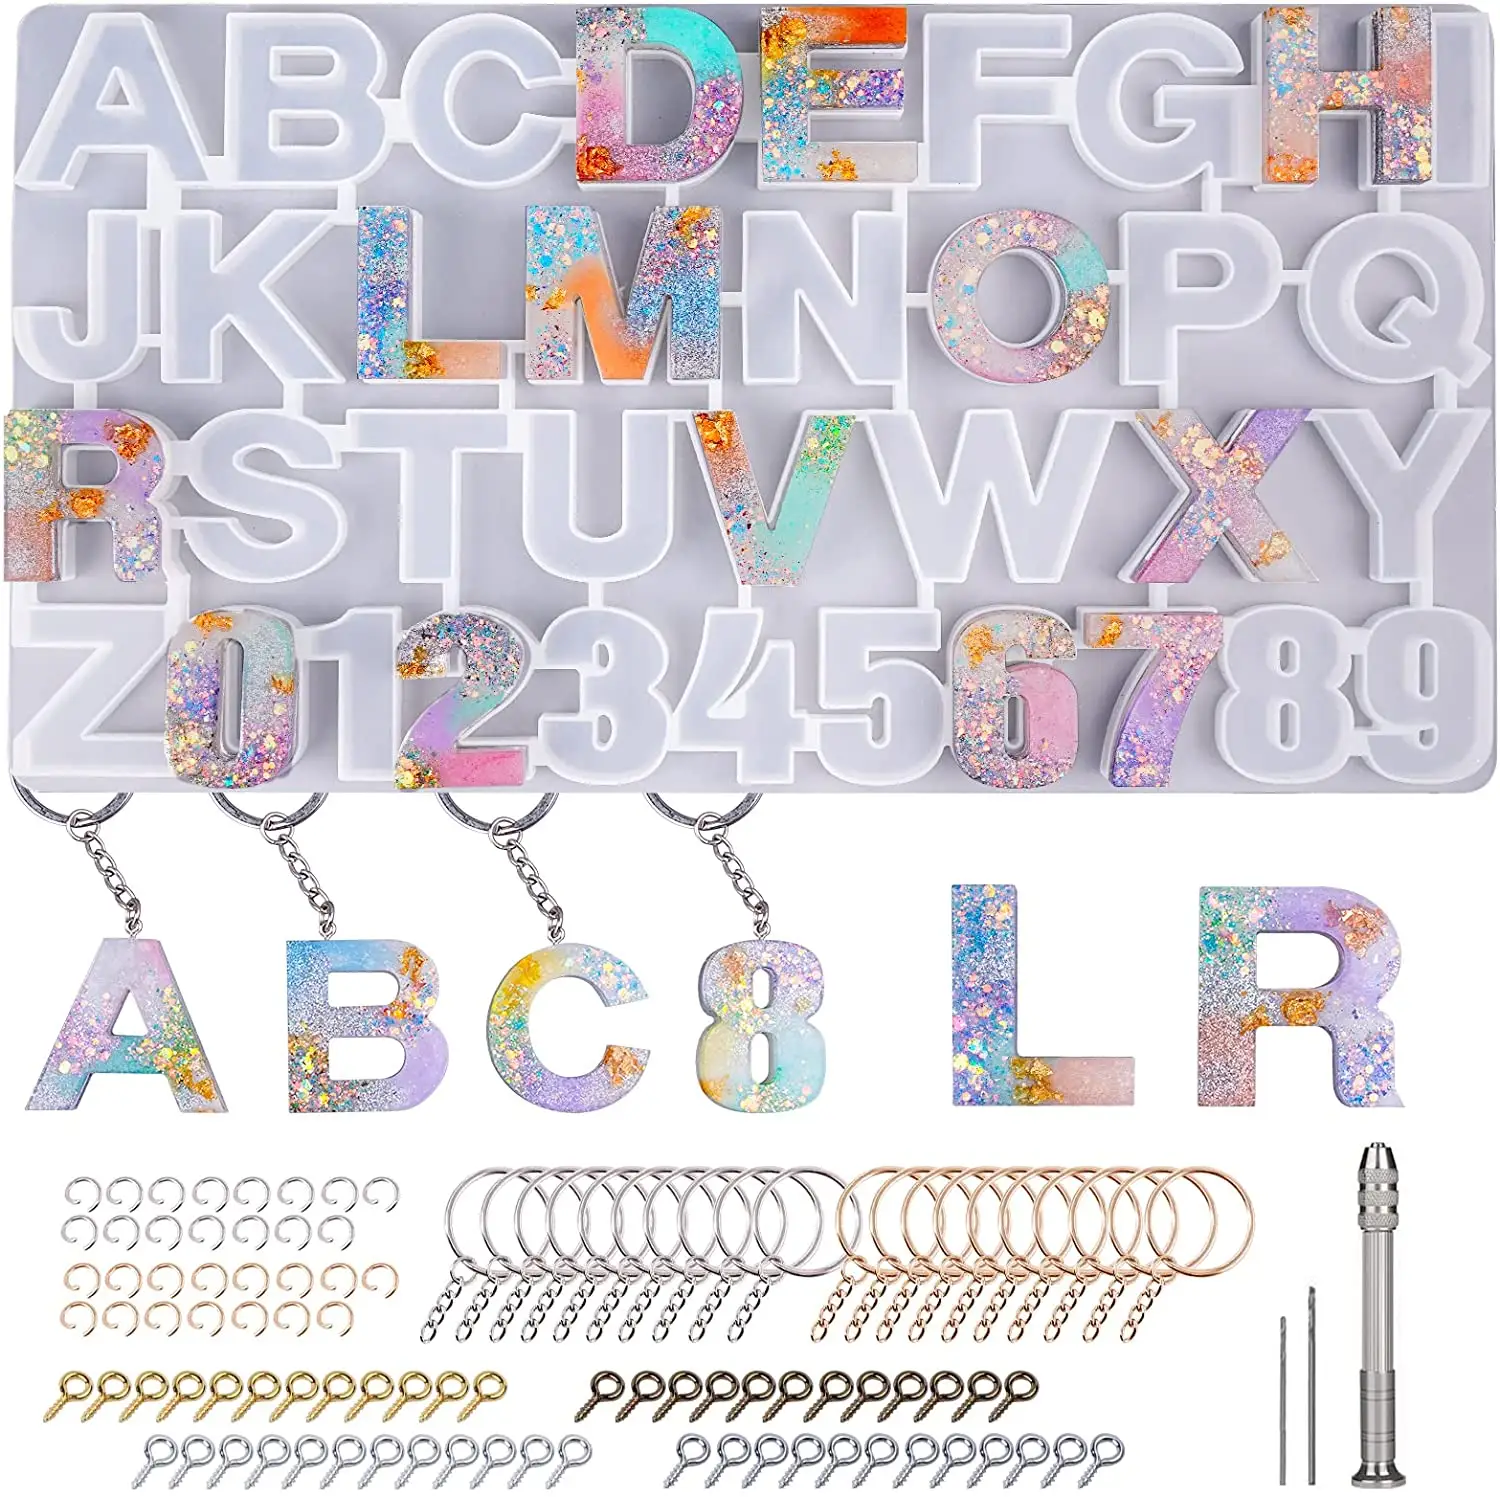 Форма для алфавита из эпоксидной смолы, силиконовая форма для обратной стороны, для отлива цепочки для ключей/дверной тарелки